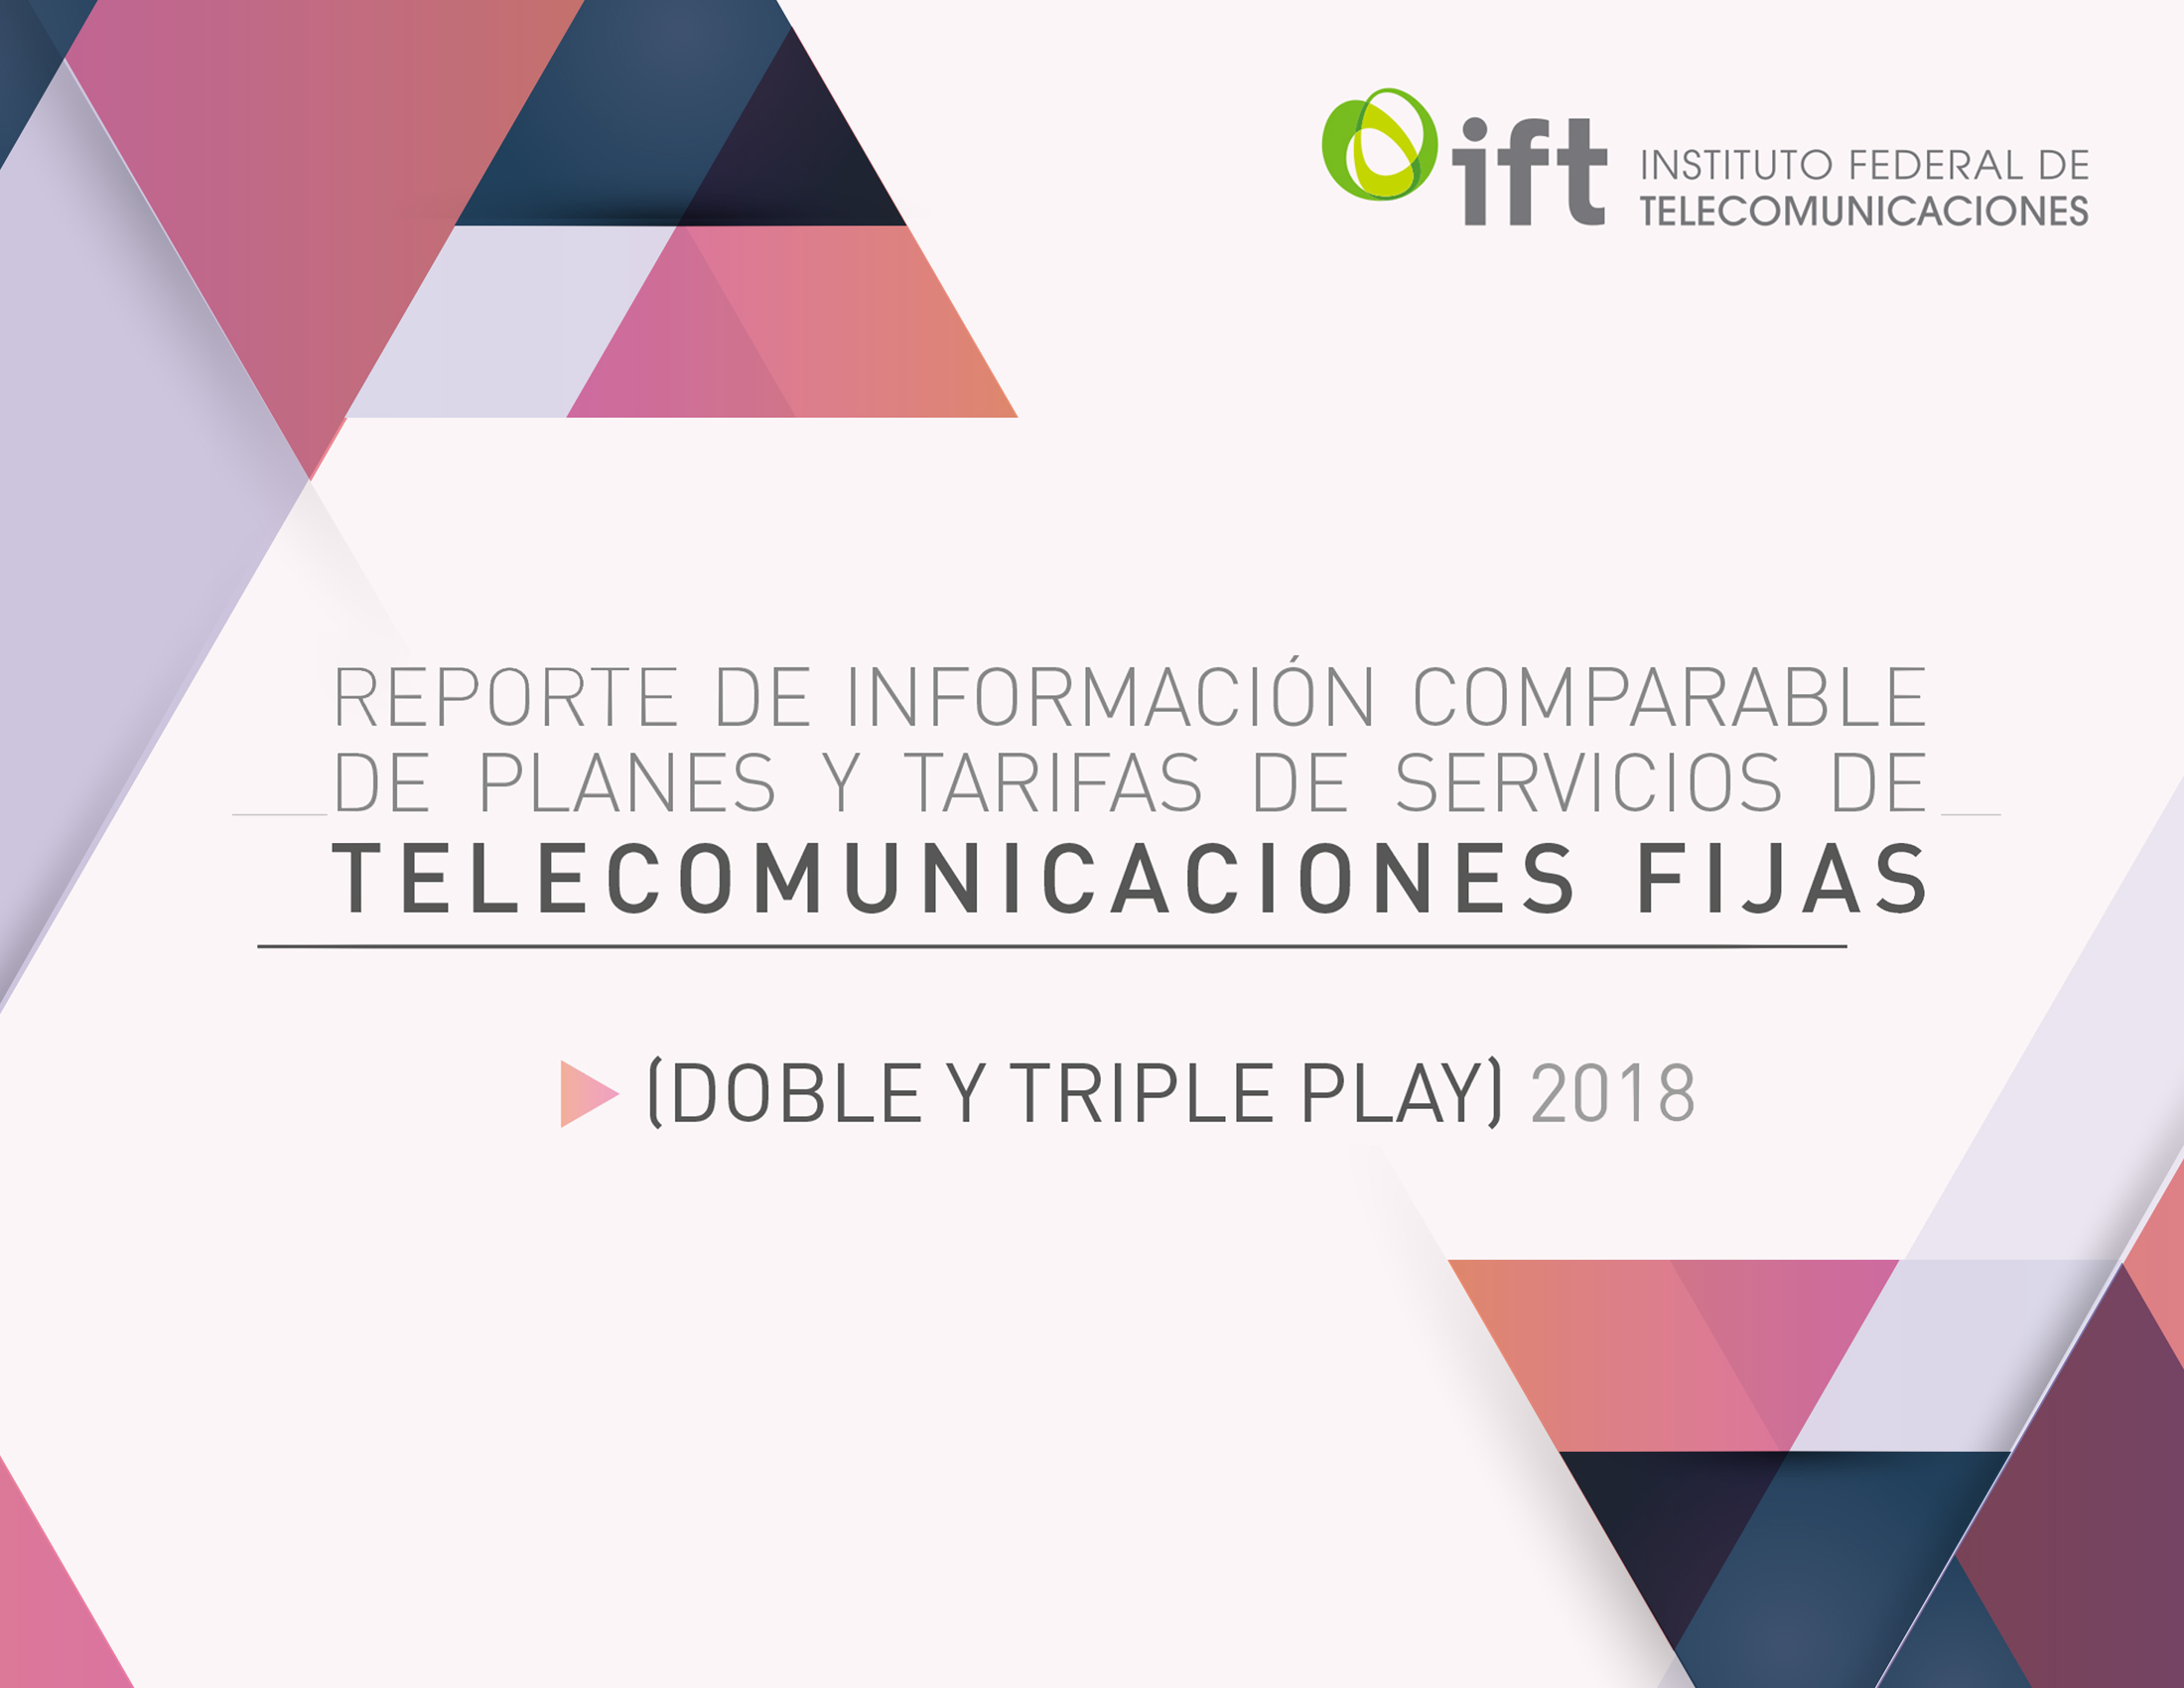 Reporte de Información Comparable de Planes y Tarifas de Servicios de Telecomunicaciones Fijas (Doble y Triple Play) 2018